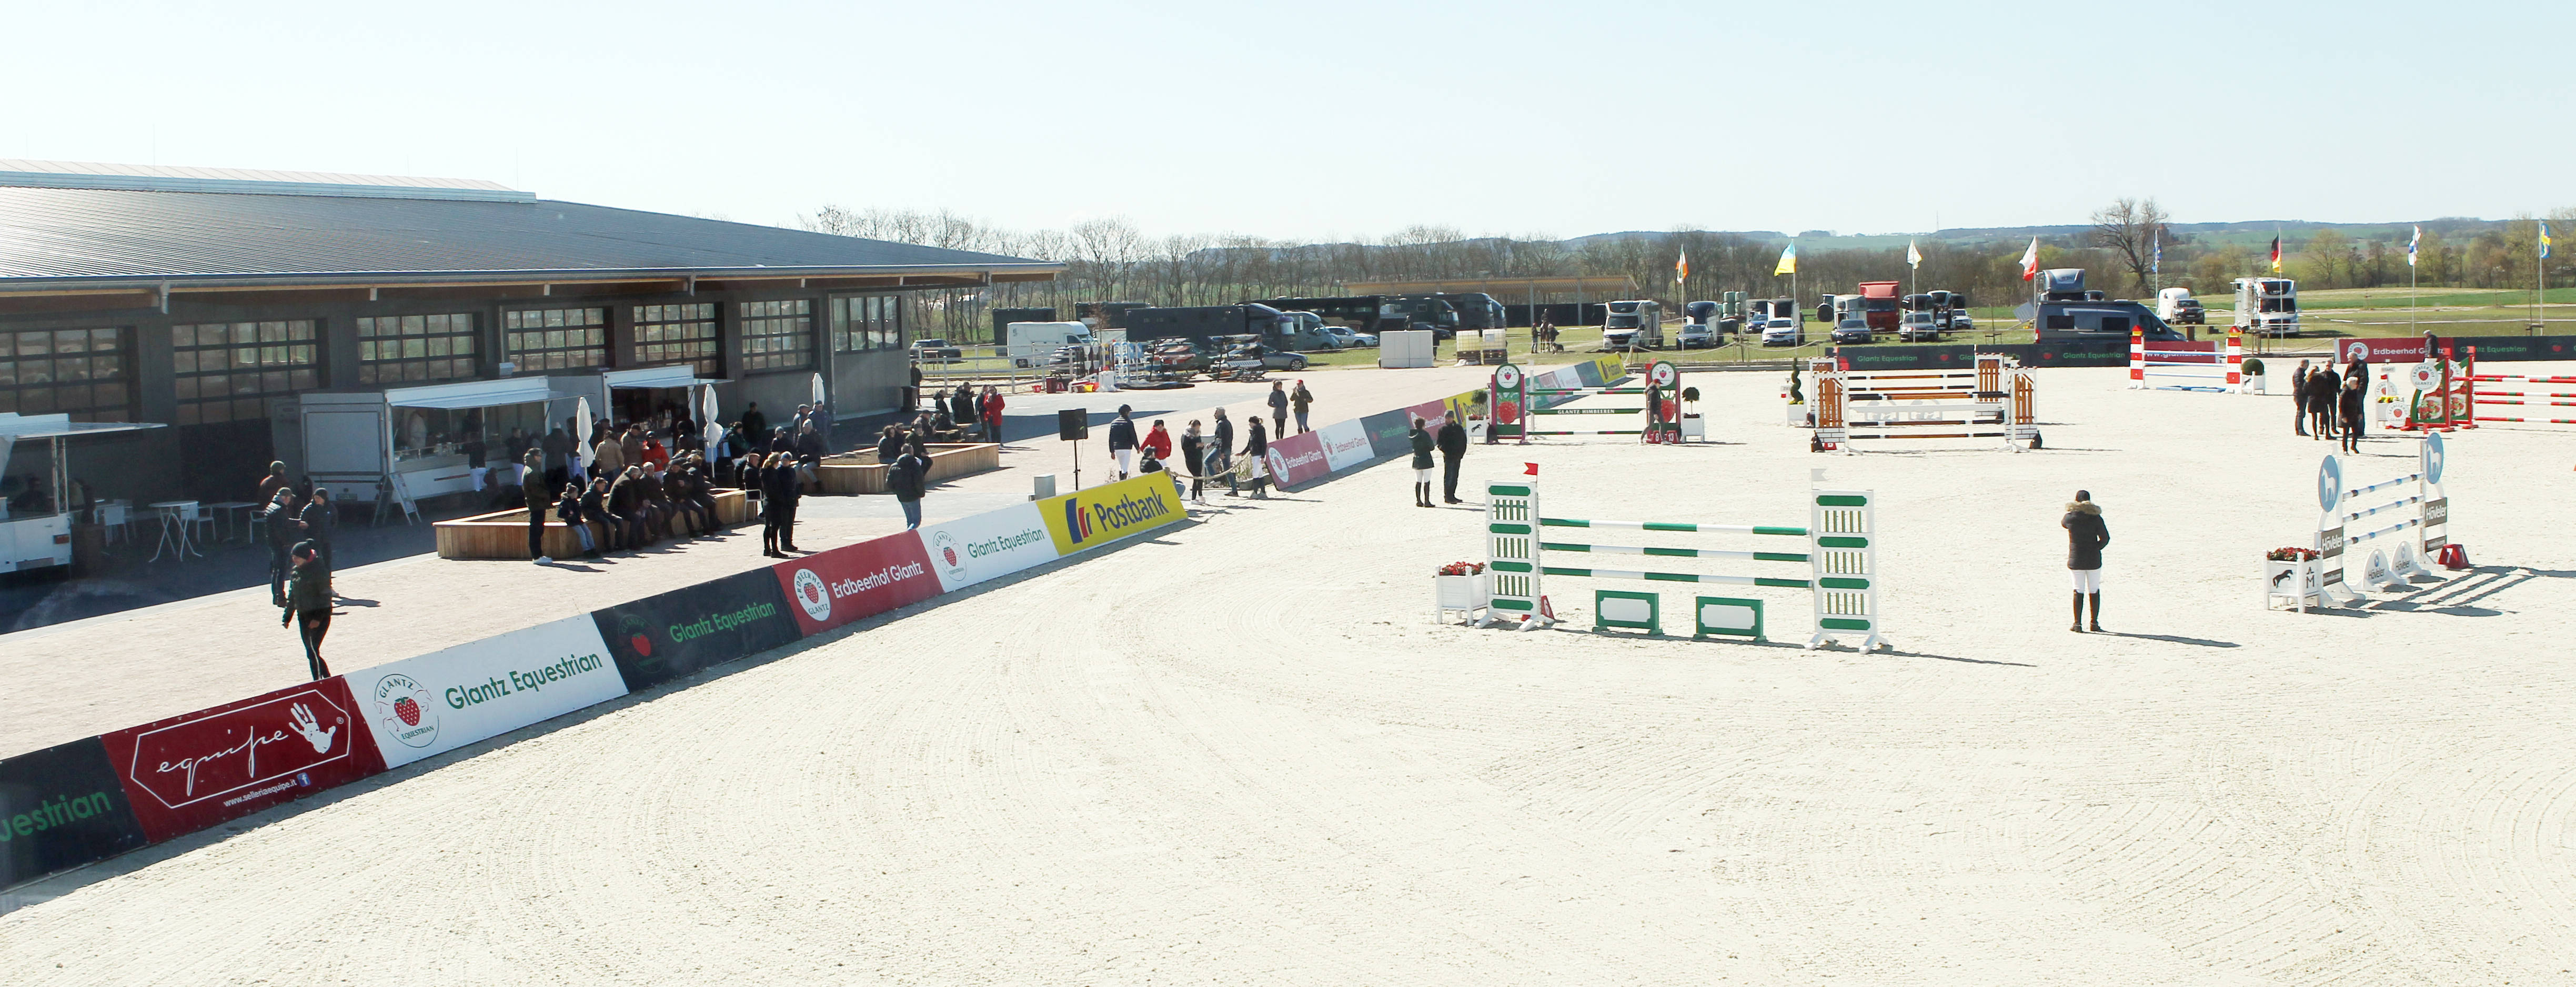 Mit dem Glantz-Junior-Future-Cup wird eine neue Turnierserie in Hohen Wieschendorf initiiert. © Jutta Wego